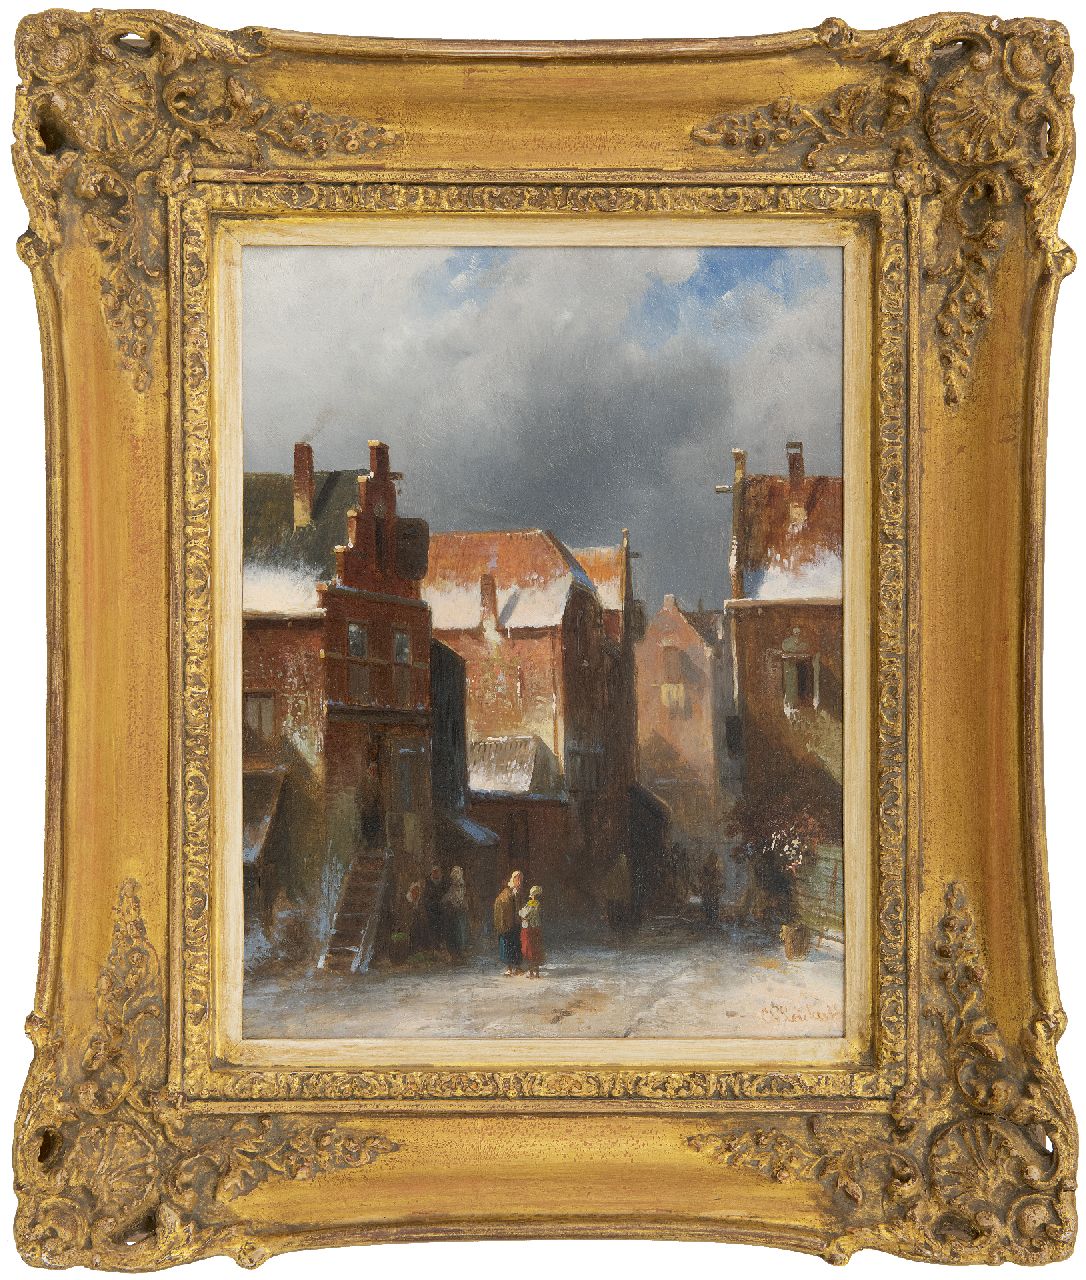 Leickert C.H.J.  | 'Charles' Henri Joseph Leickert | Schilderijen te koop aangeboden | Winters straatje, olieverf op paneel 27,2 x 21,6 cm, gesigneerd rechtsonder